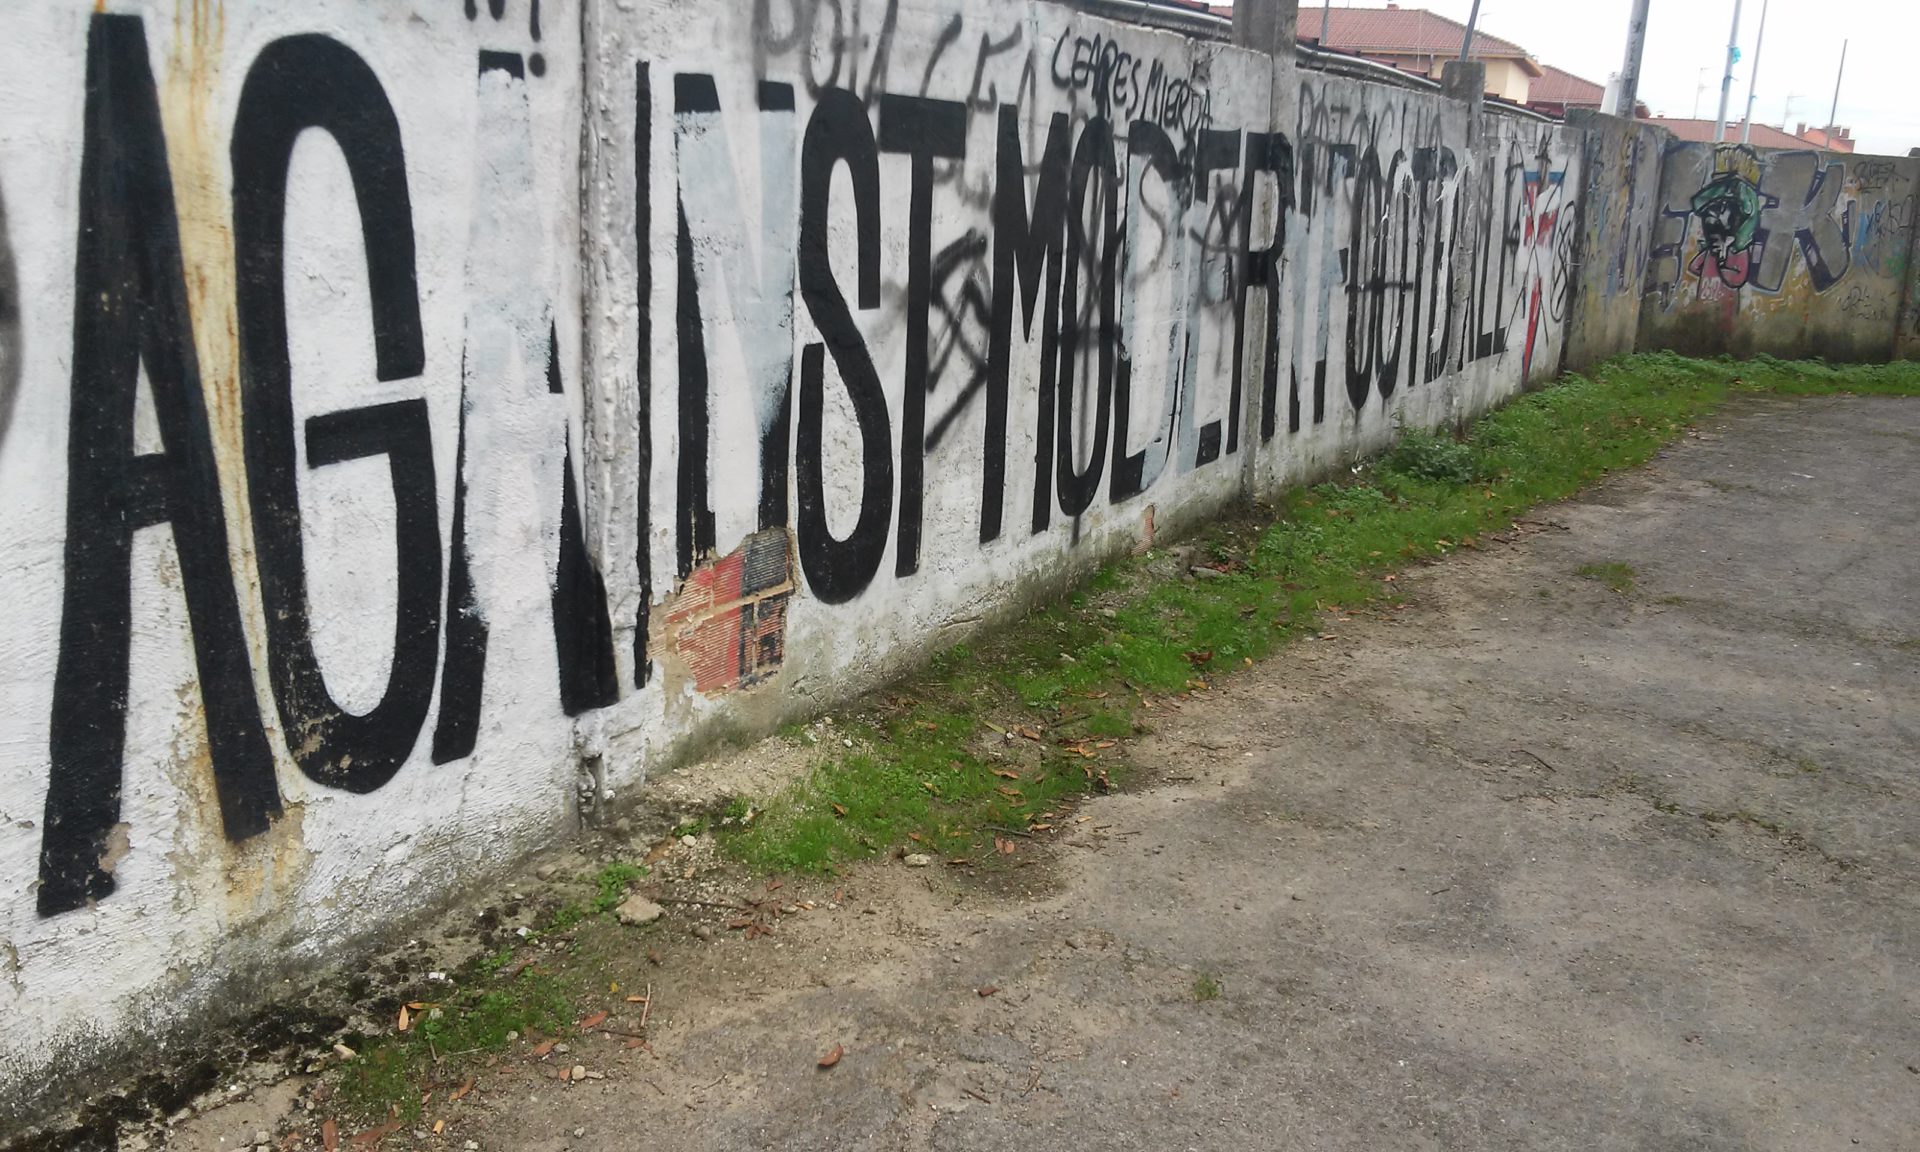 El mural "Against Modern Football", destrozado con pintadas nazis.